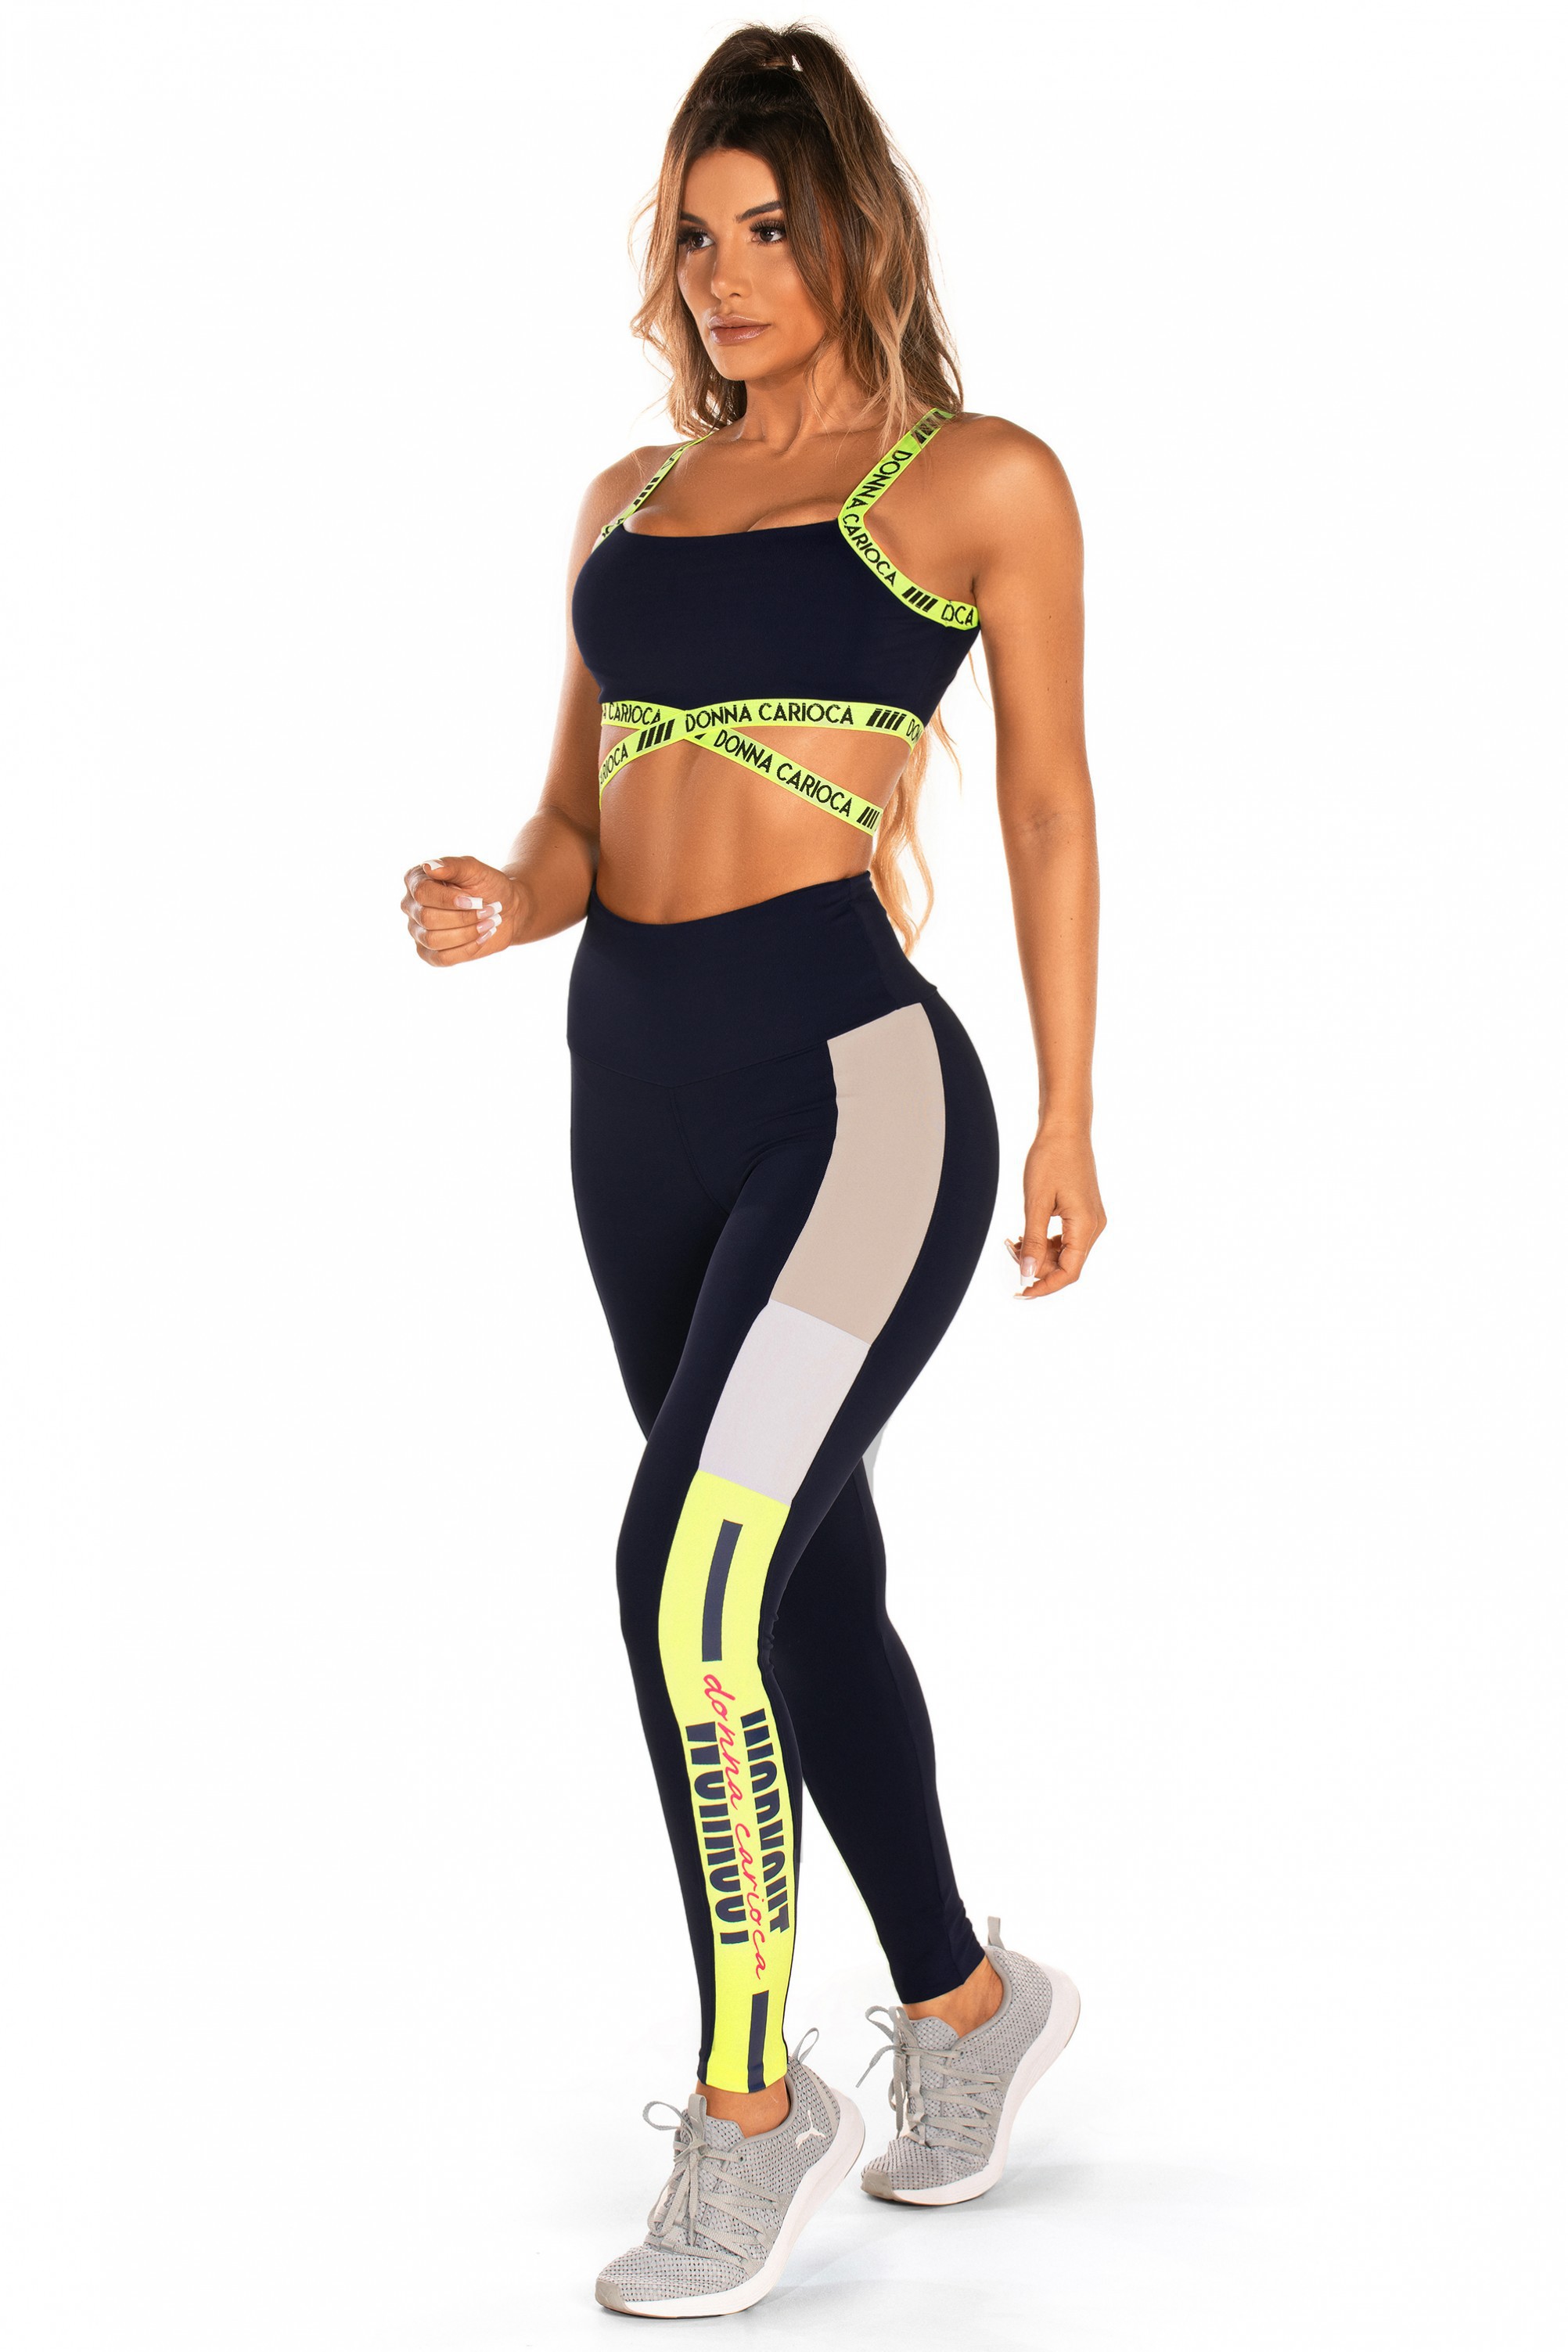 Legging Workout em Suplex Poliamida e Estampa Emborrachada - Donna Carioca  Moda Fitness